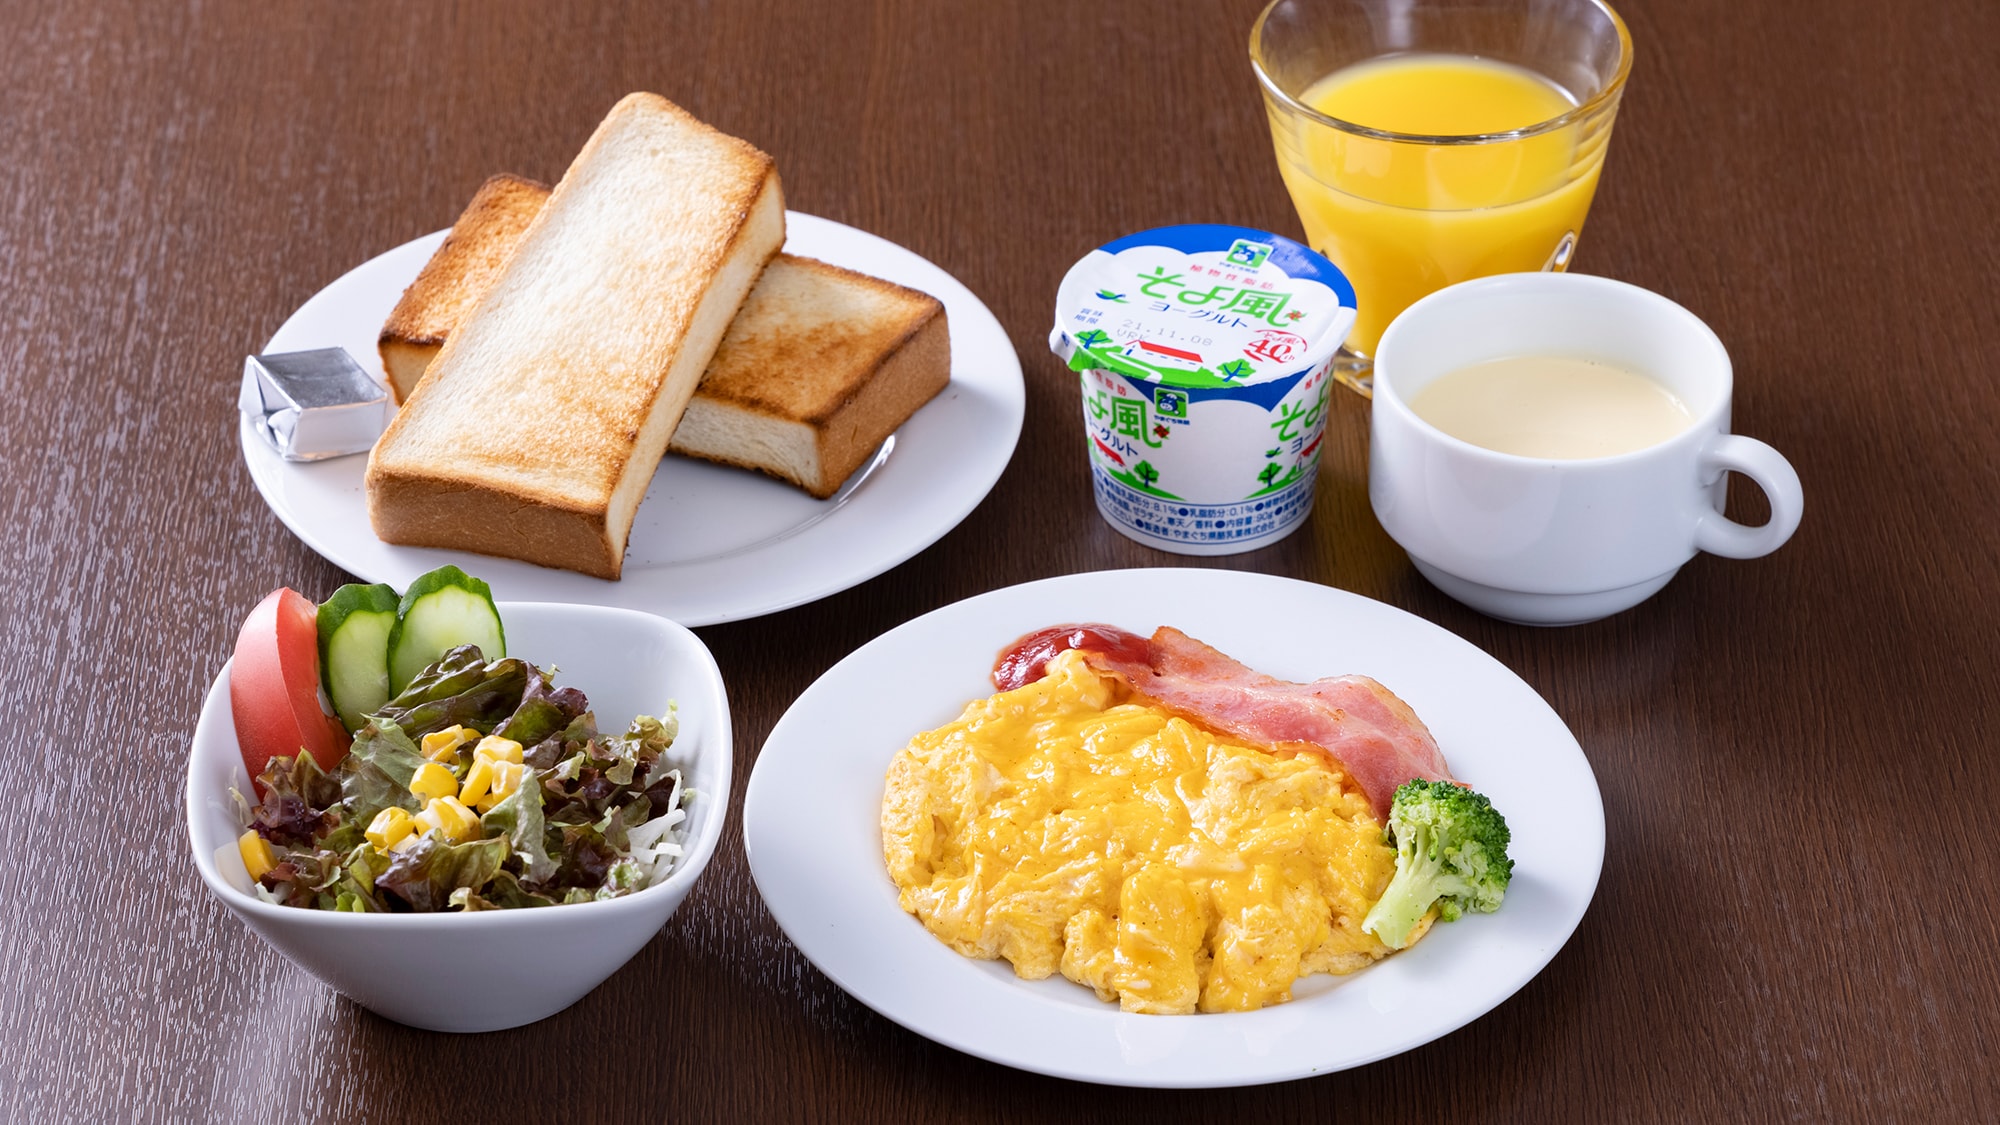 [Breakfast] Western-style set meal